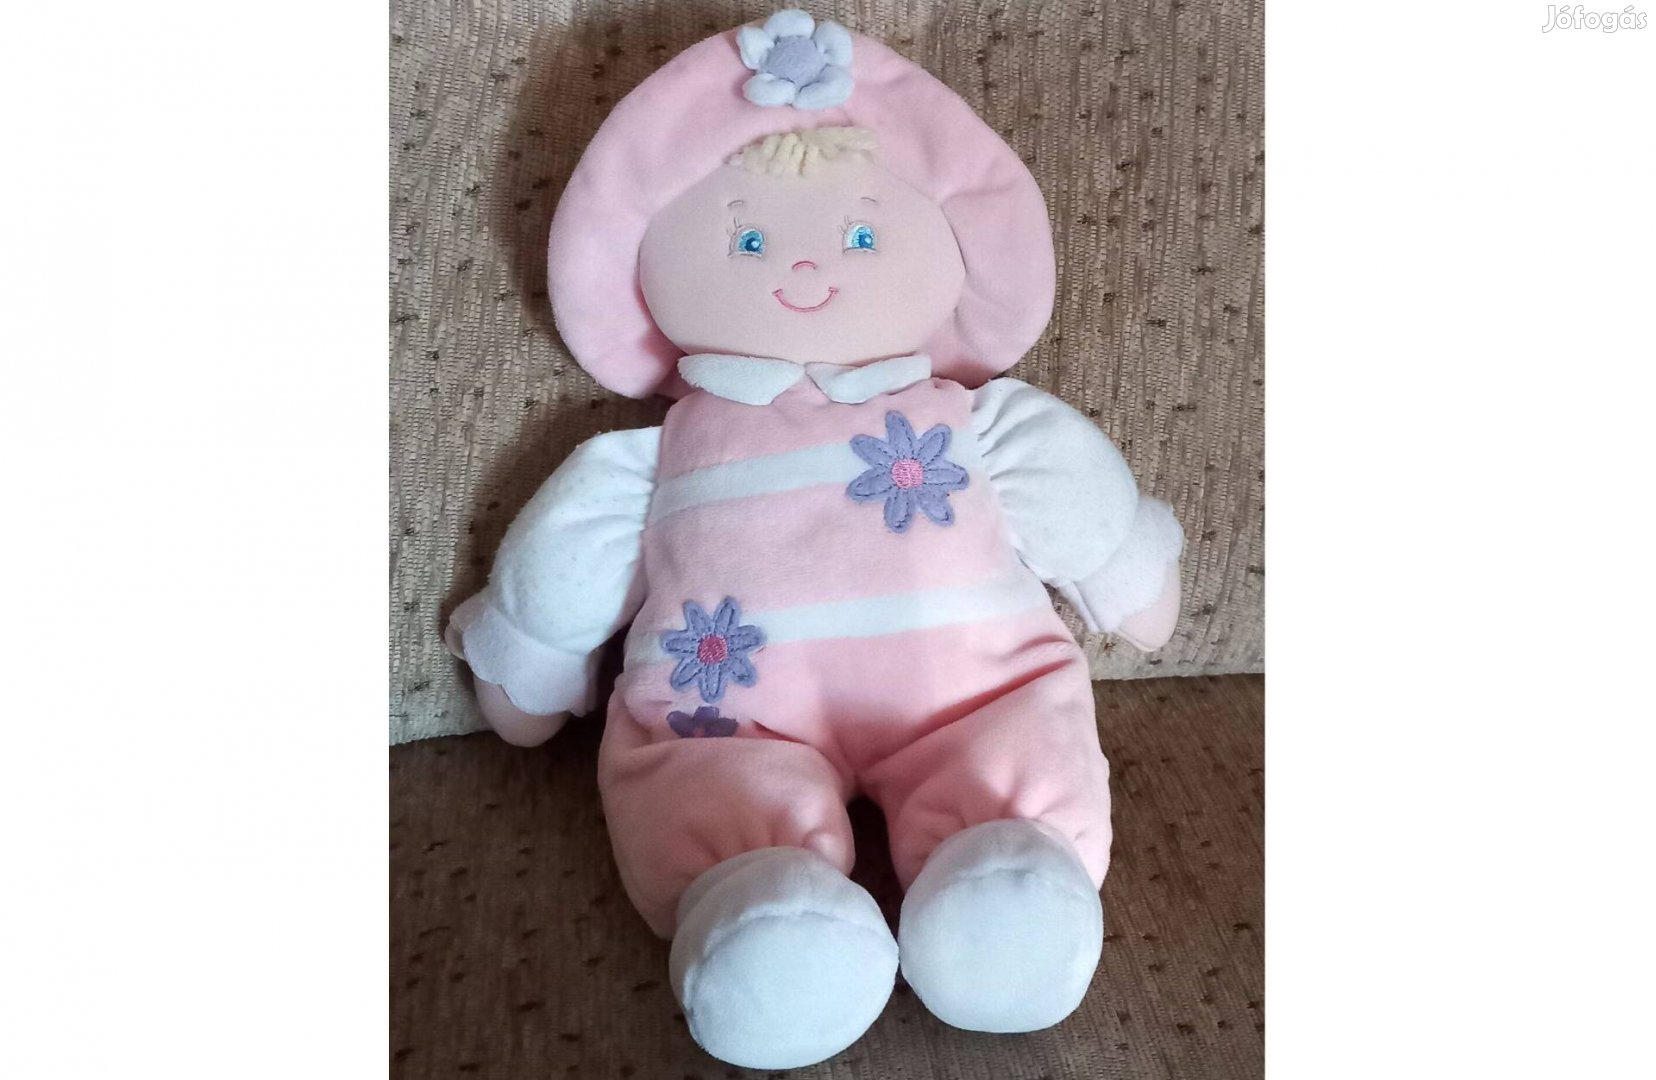 Puha játék baba (32 cm magas) , babajáték